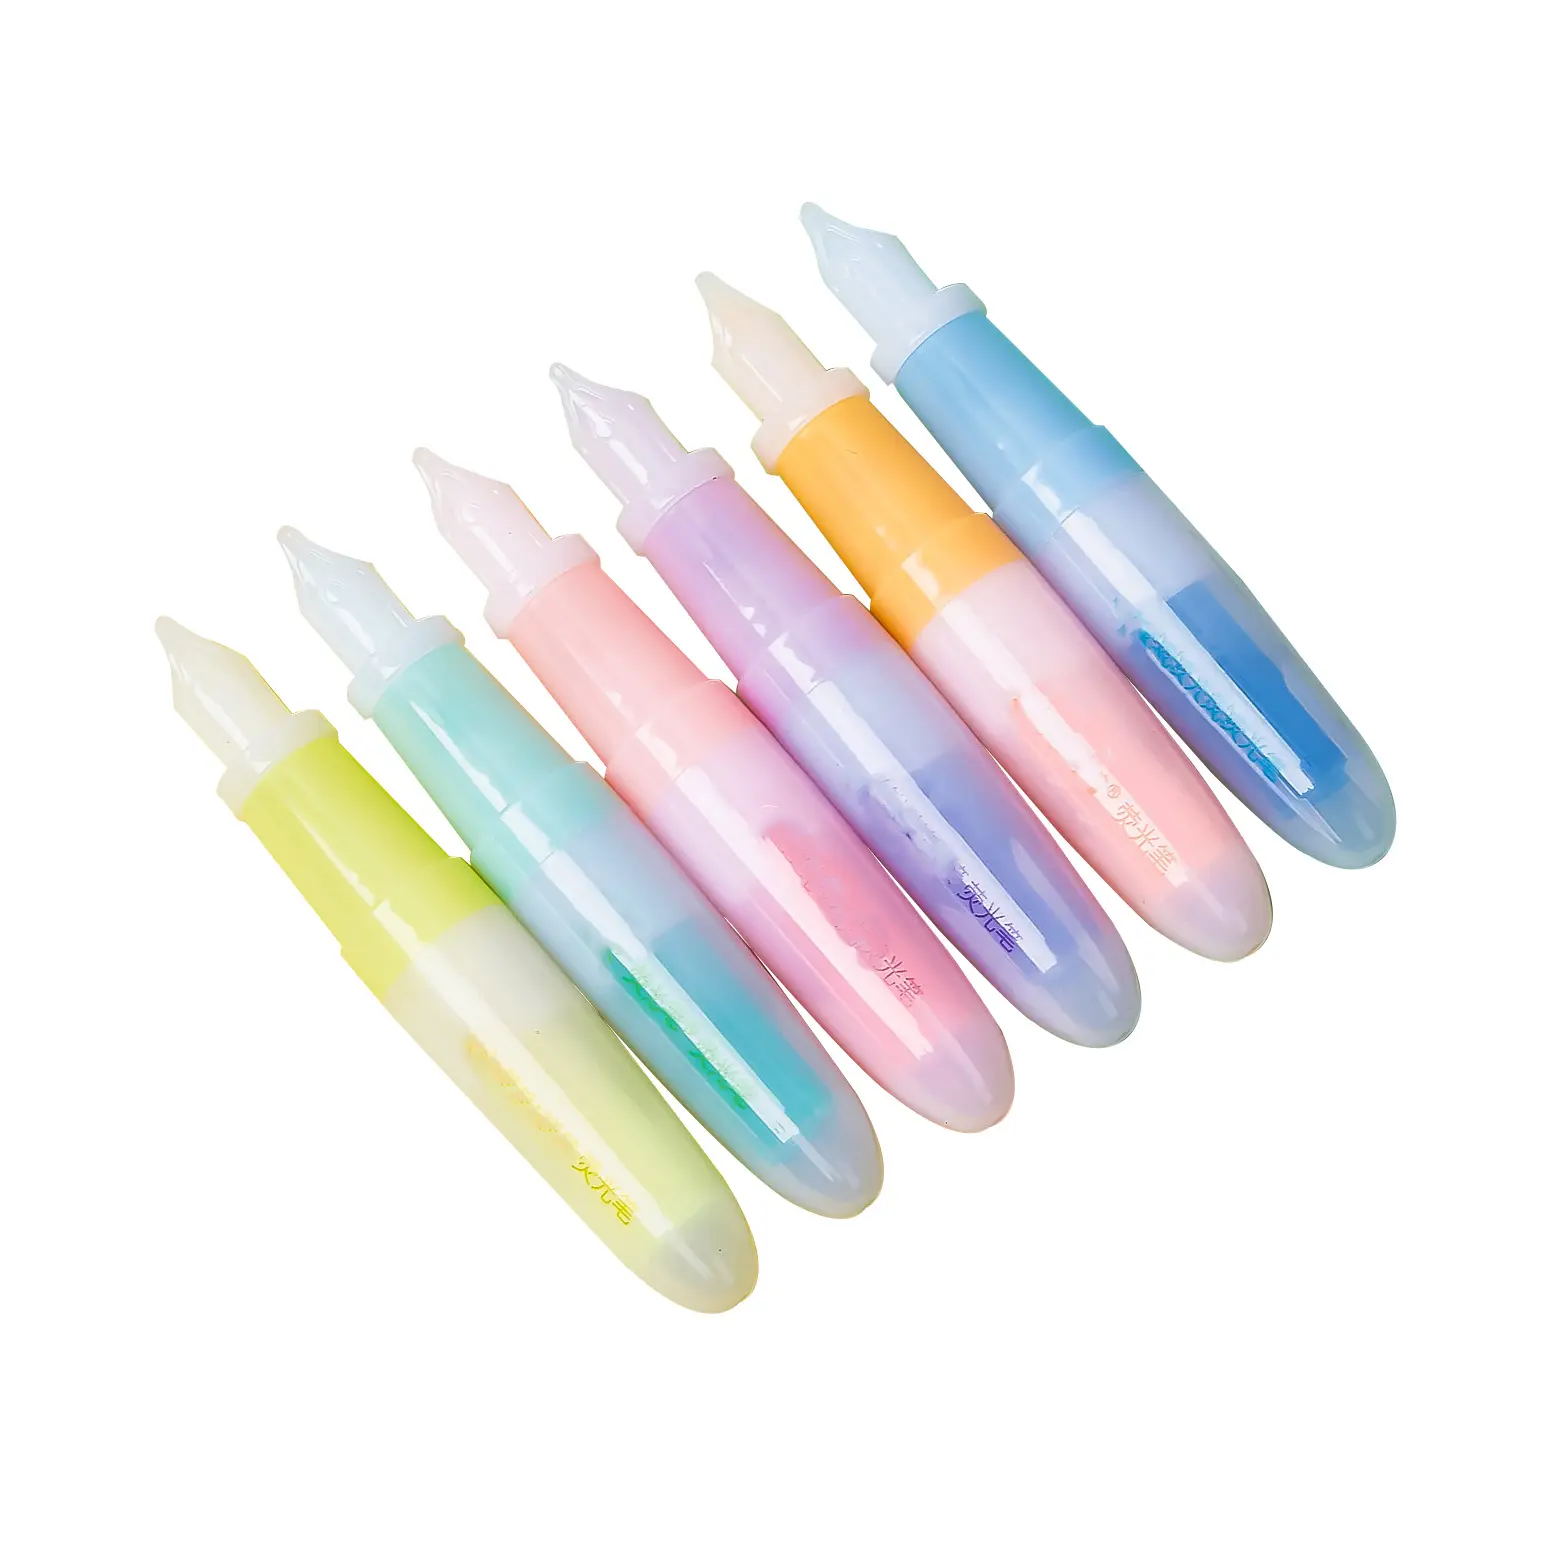 Penna stilografica Styling evidenziatore penna studente bambini carino pennarello Color caramella Set per colorare disegno che spiega il diario